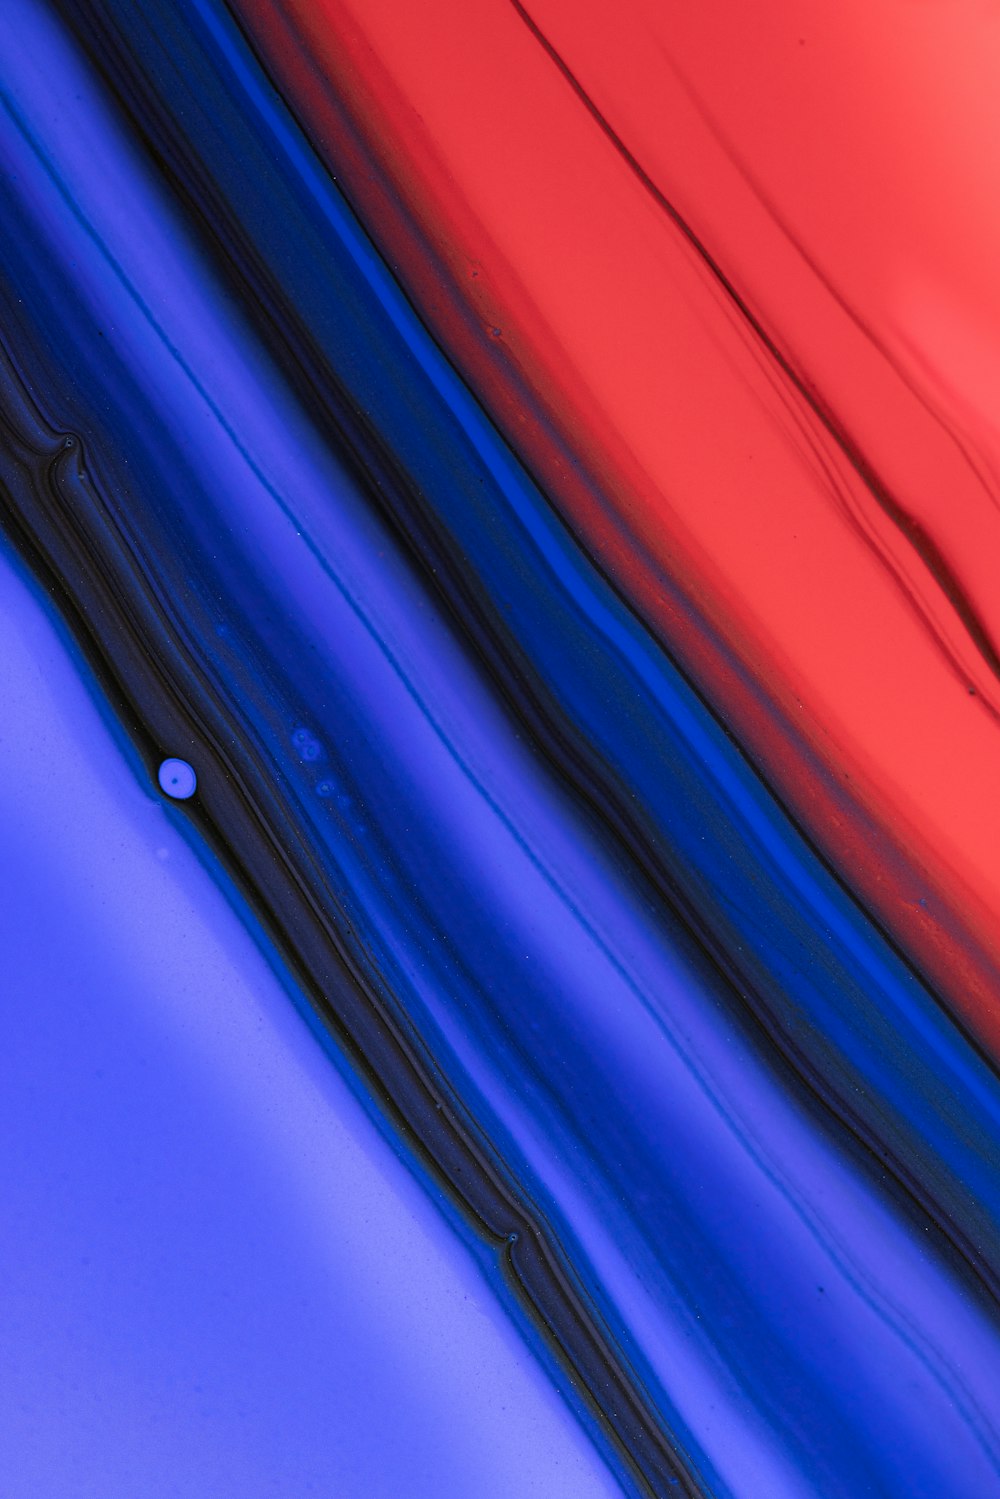 Un primer plano de un objeto rojo, azul y negro